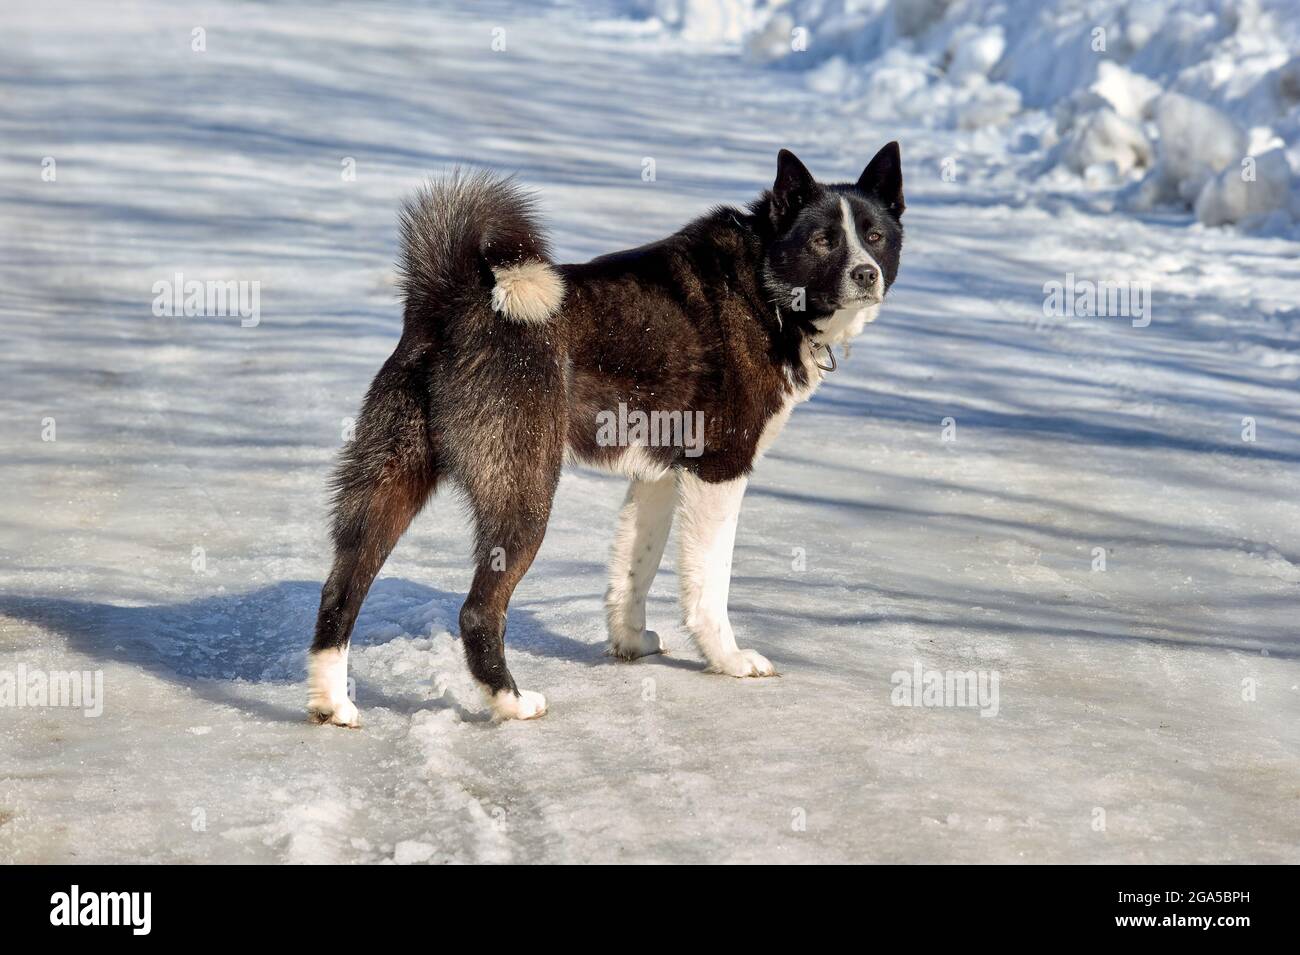 Der Hund steht an einem frostigen Tag auf einer verschneiten Straße und schaut weg Stockfoto